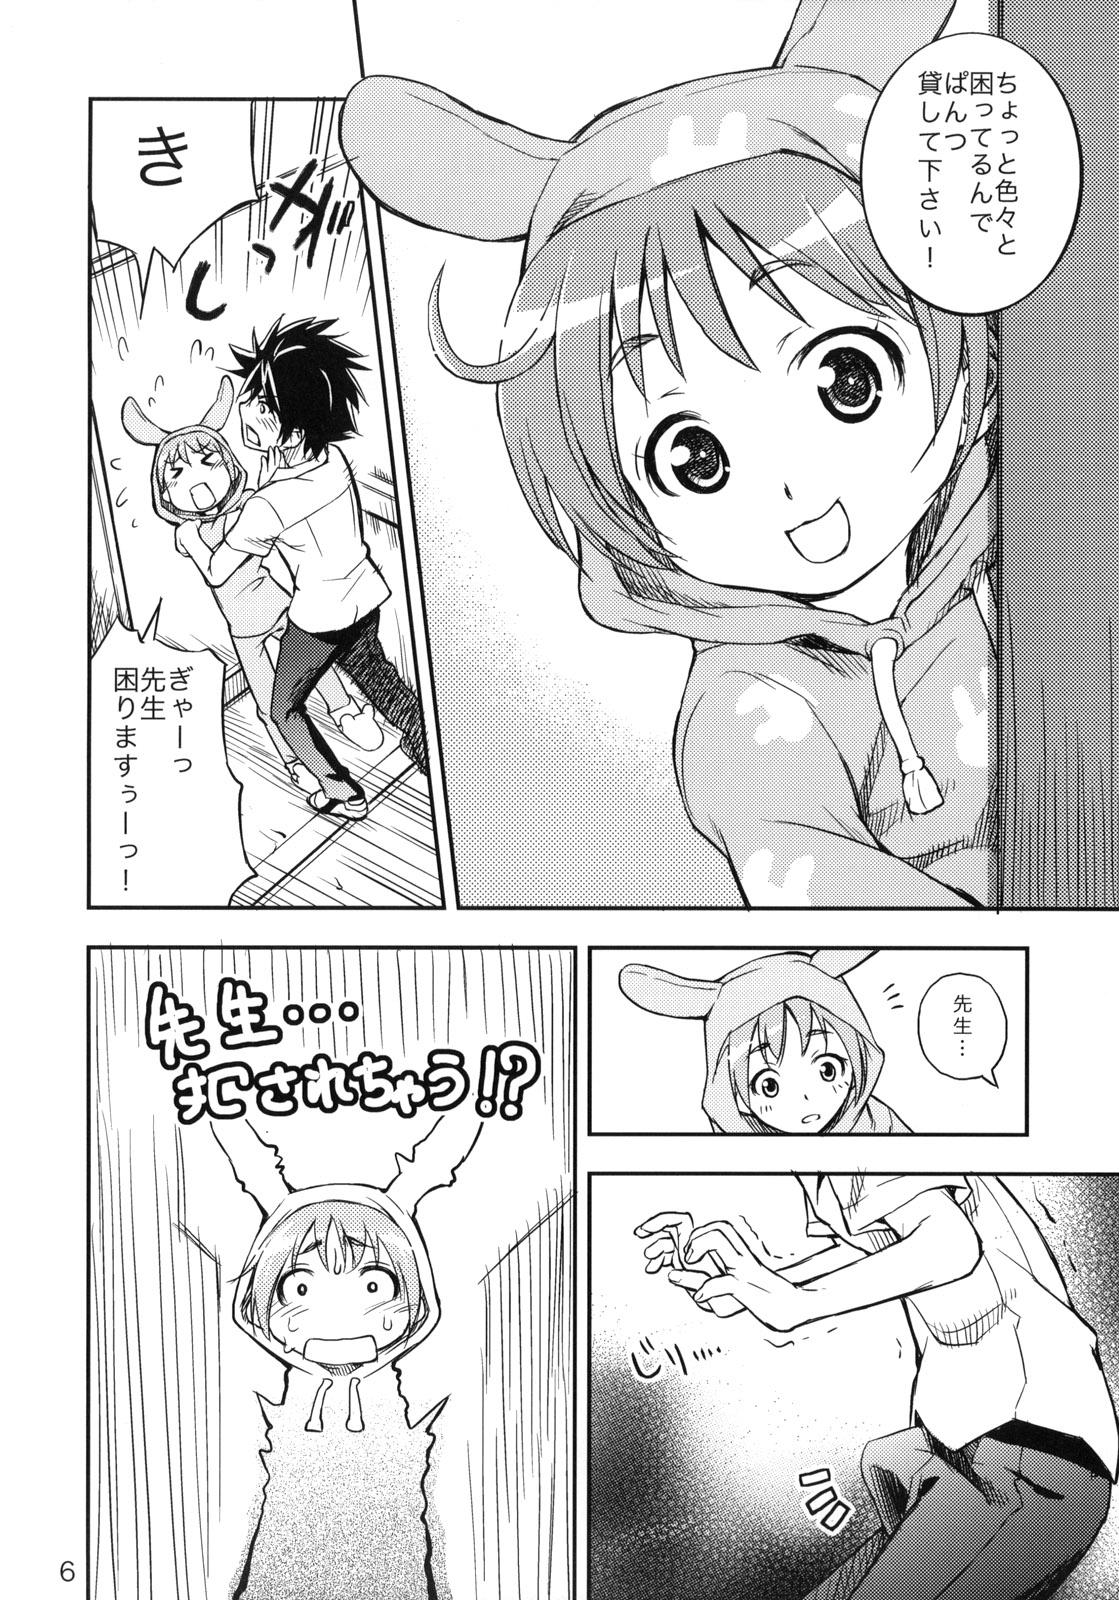 Soft Toaru Pantsu no Index - Toaru majutsu no index Shot - Page 5